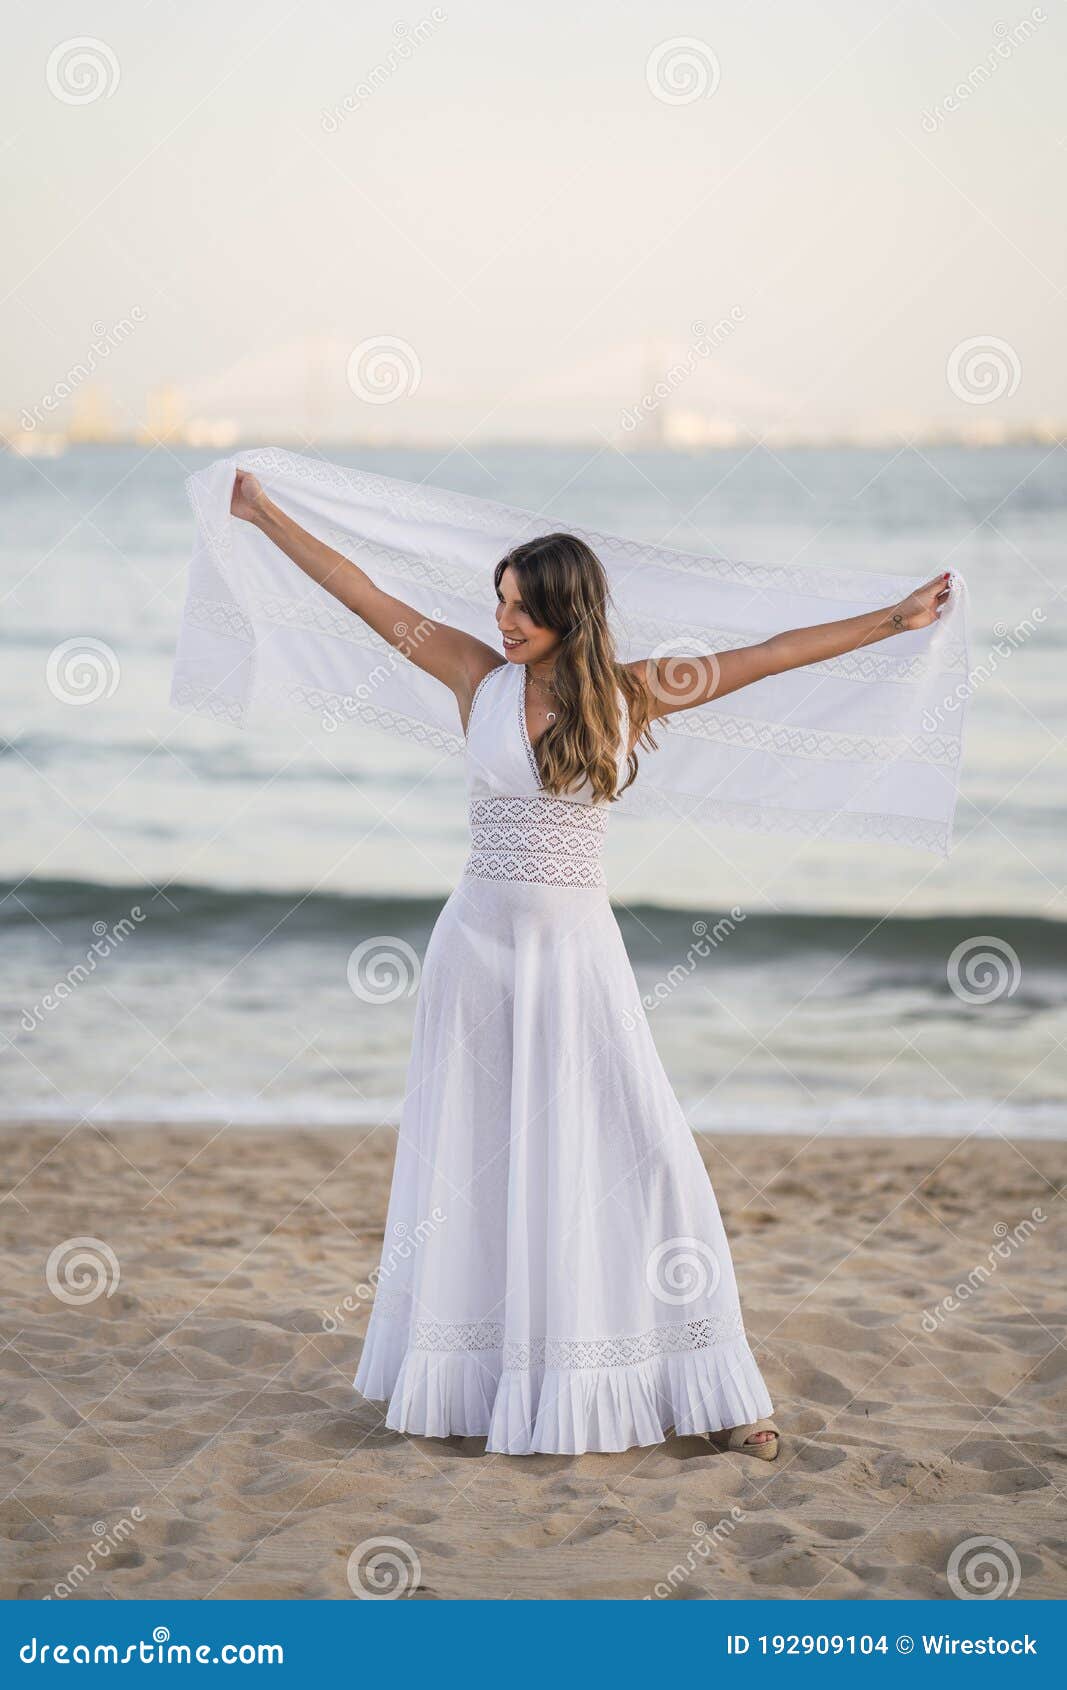 Retrato De Una Sexy Vestida Un Largo Vestido Disfrutando De La Playa Y Jugando Con Su Chal de archivo - Imagen de joven, cara: 192909104